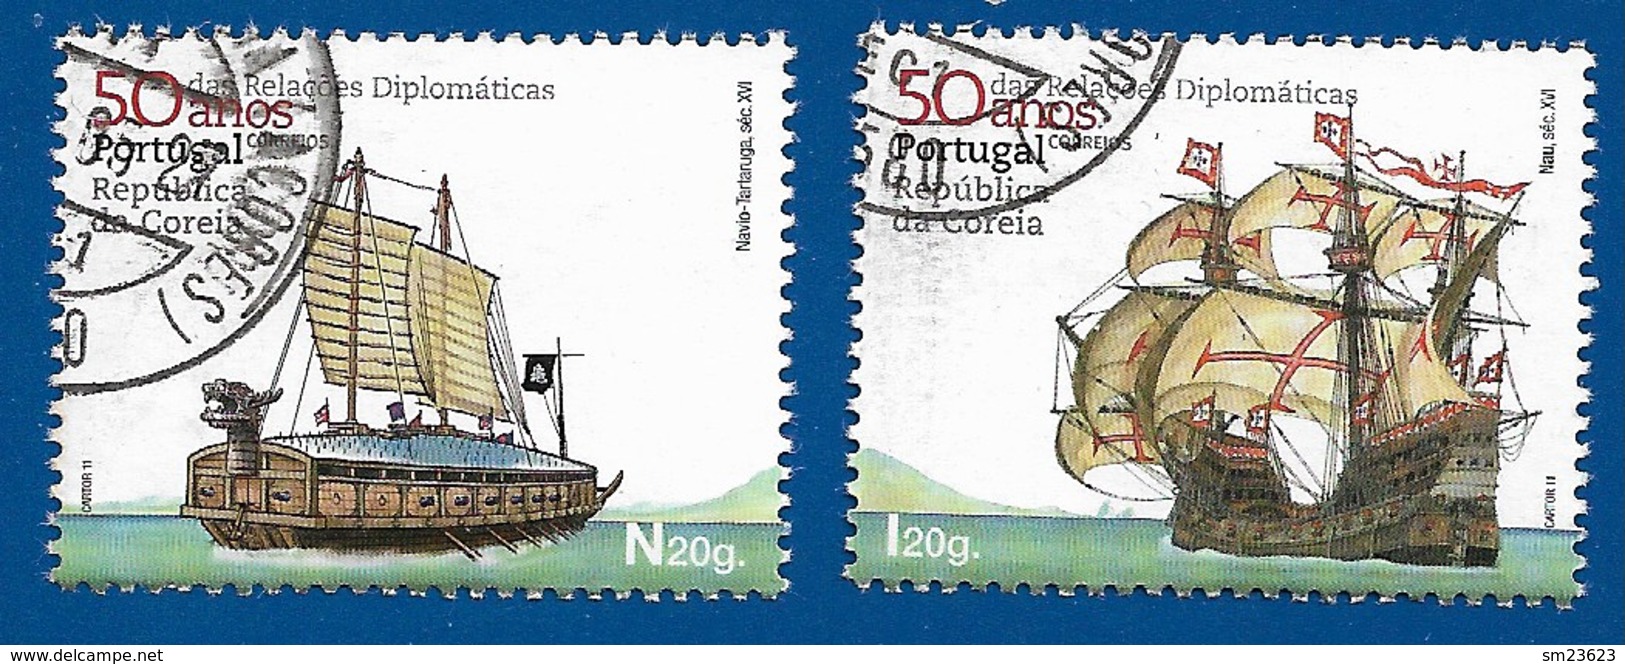 Portugal   2011  Mi.Nr. 3619 / 3620 , 50 Anos Das Relacöes Diplomaticas - Gestempelt / Fine Used / (o) - Gebruikt